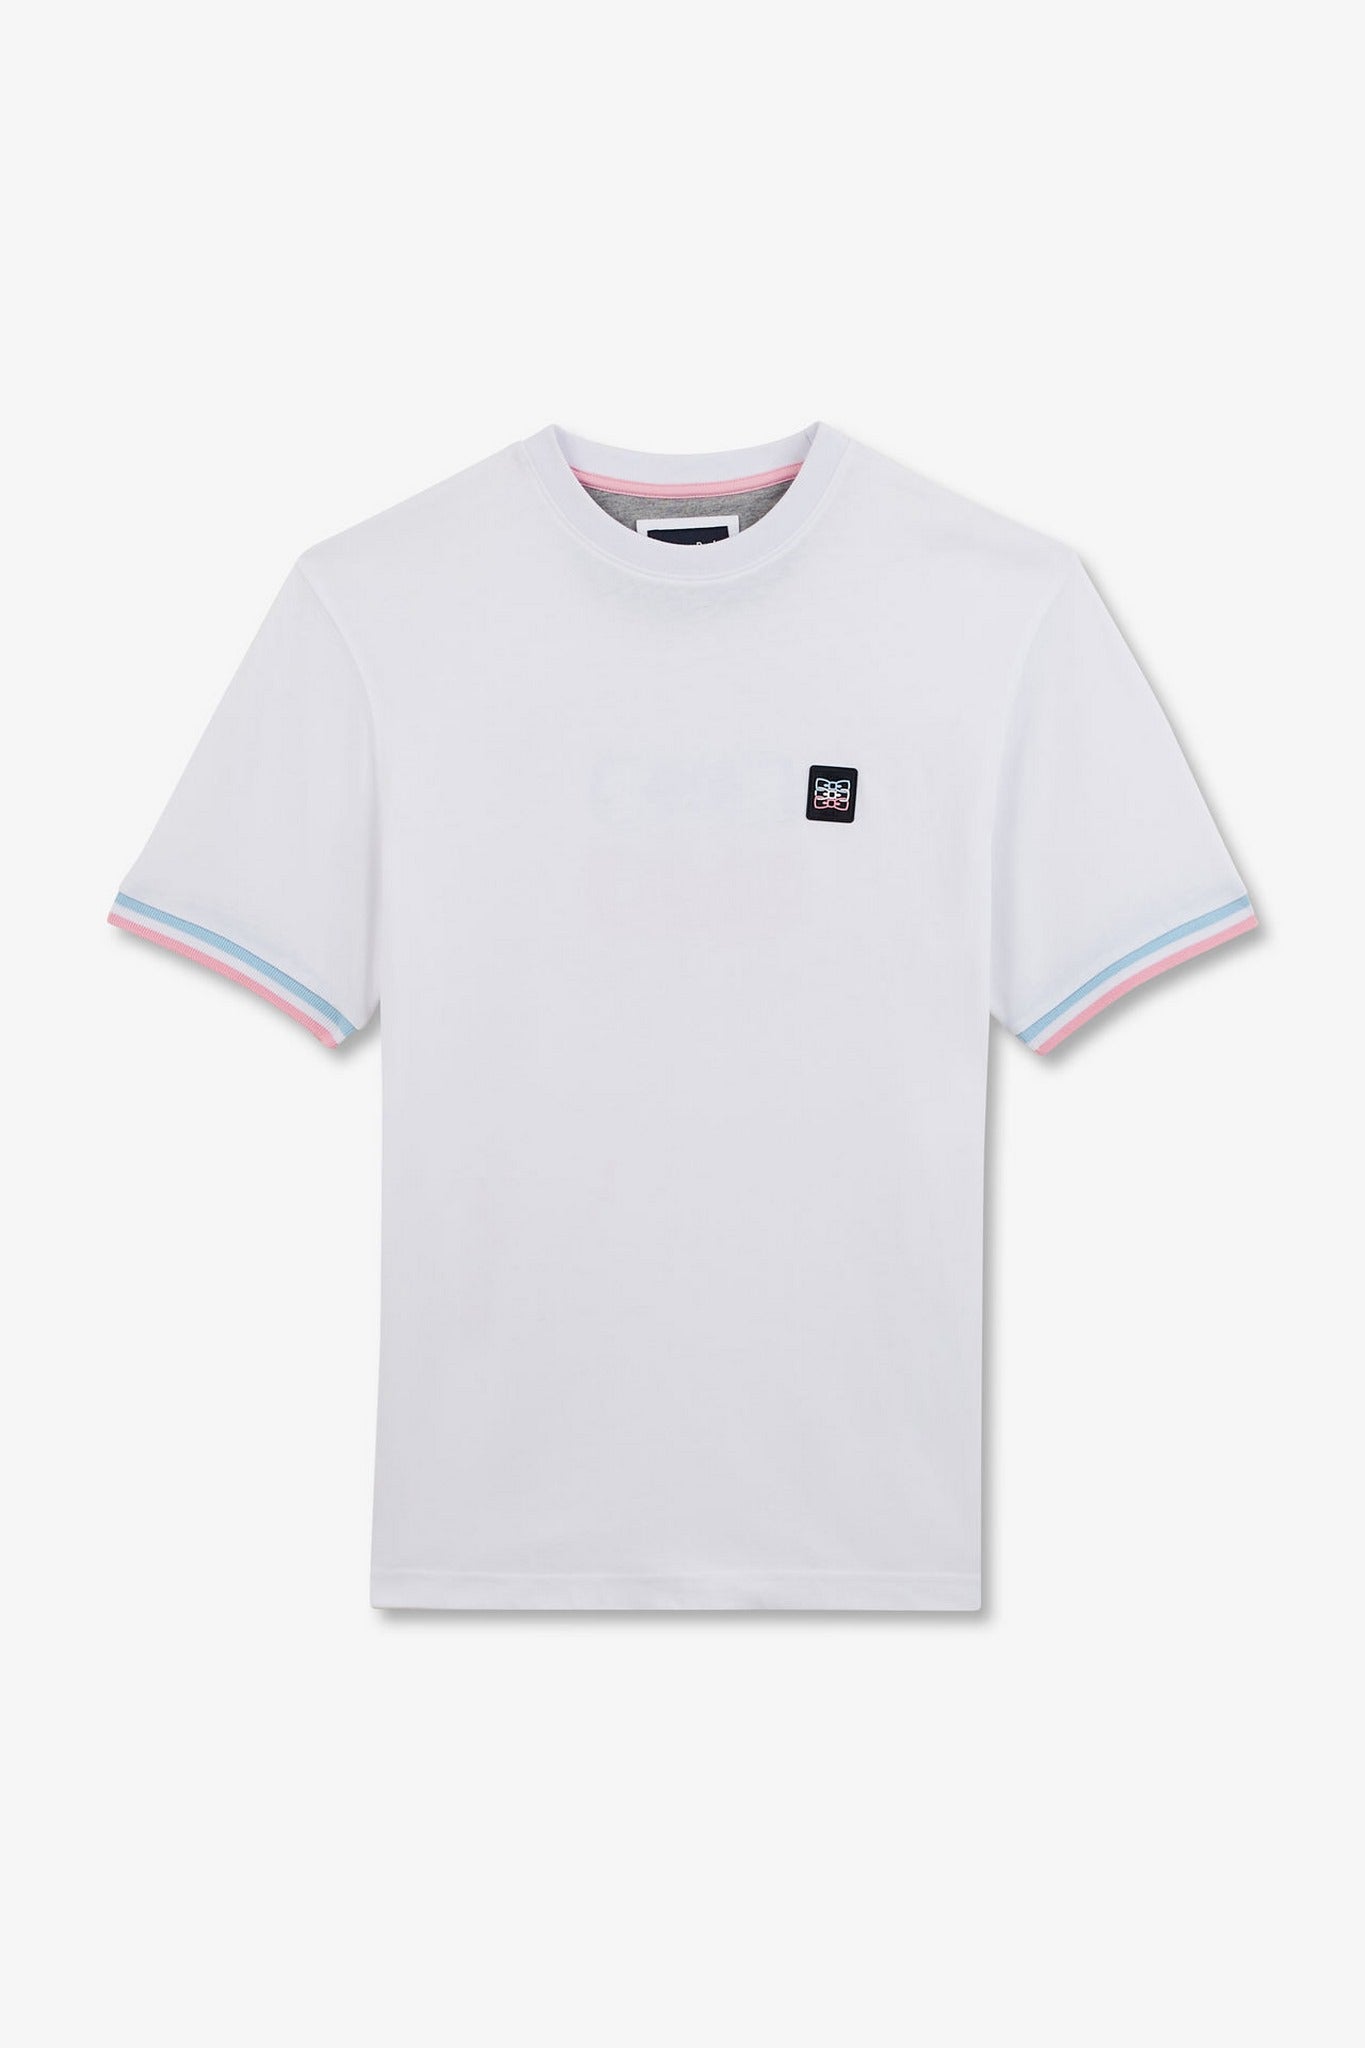 T-shirt manches courtes blanc avec logo reliefé - Image 2